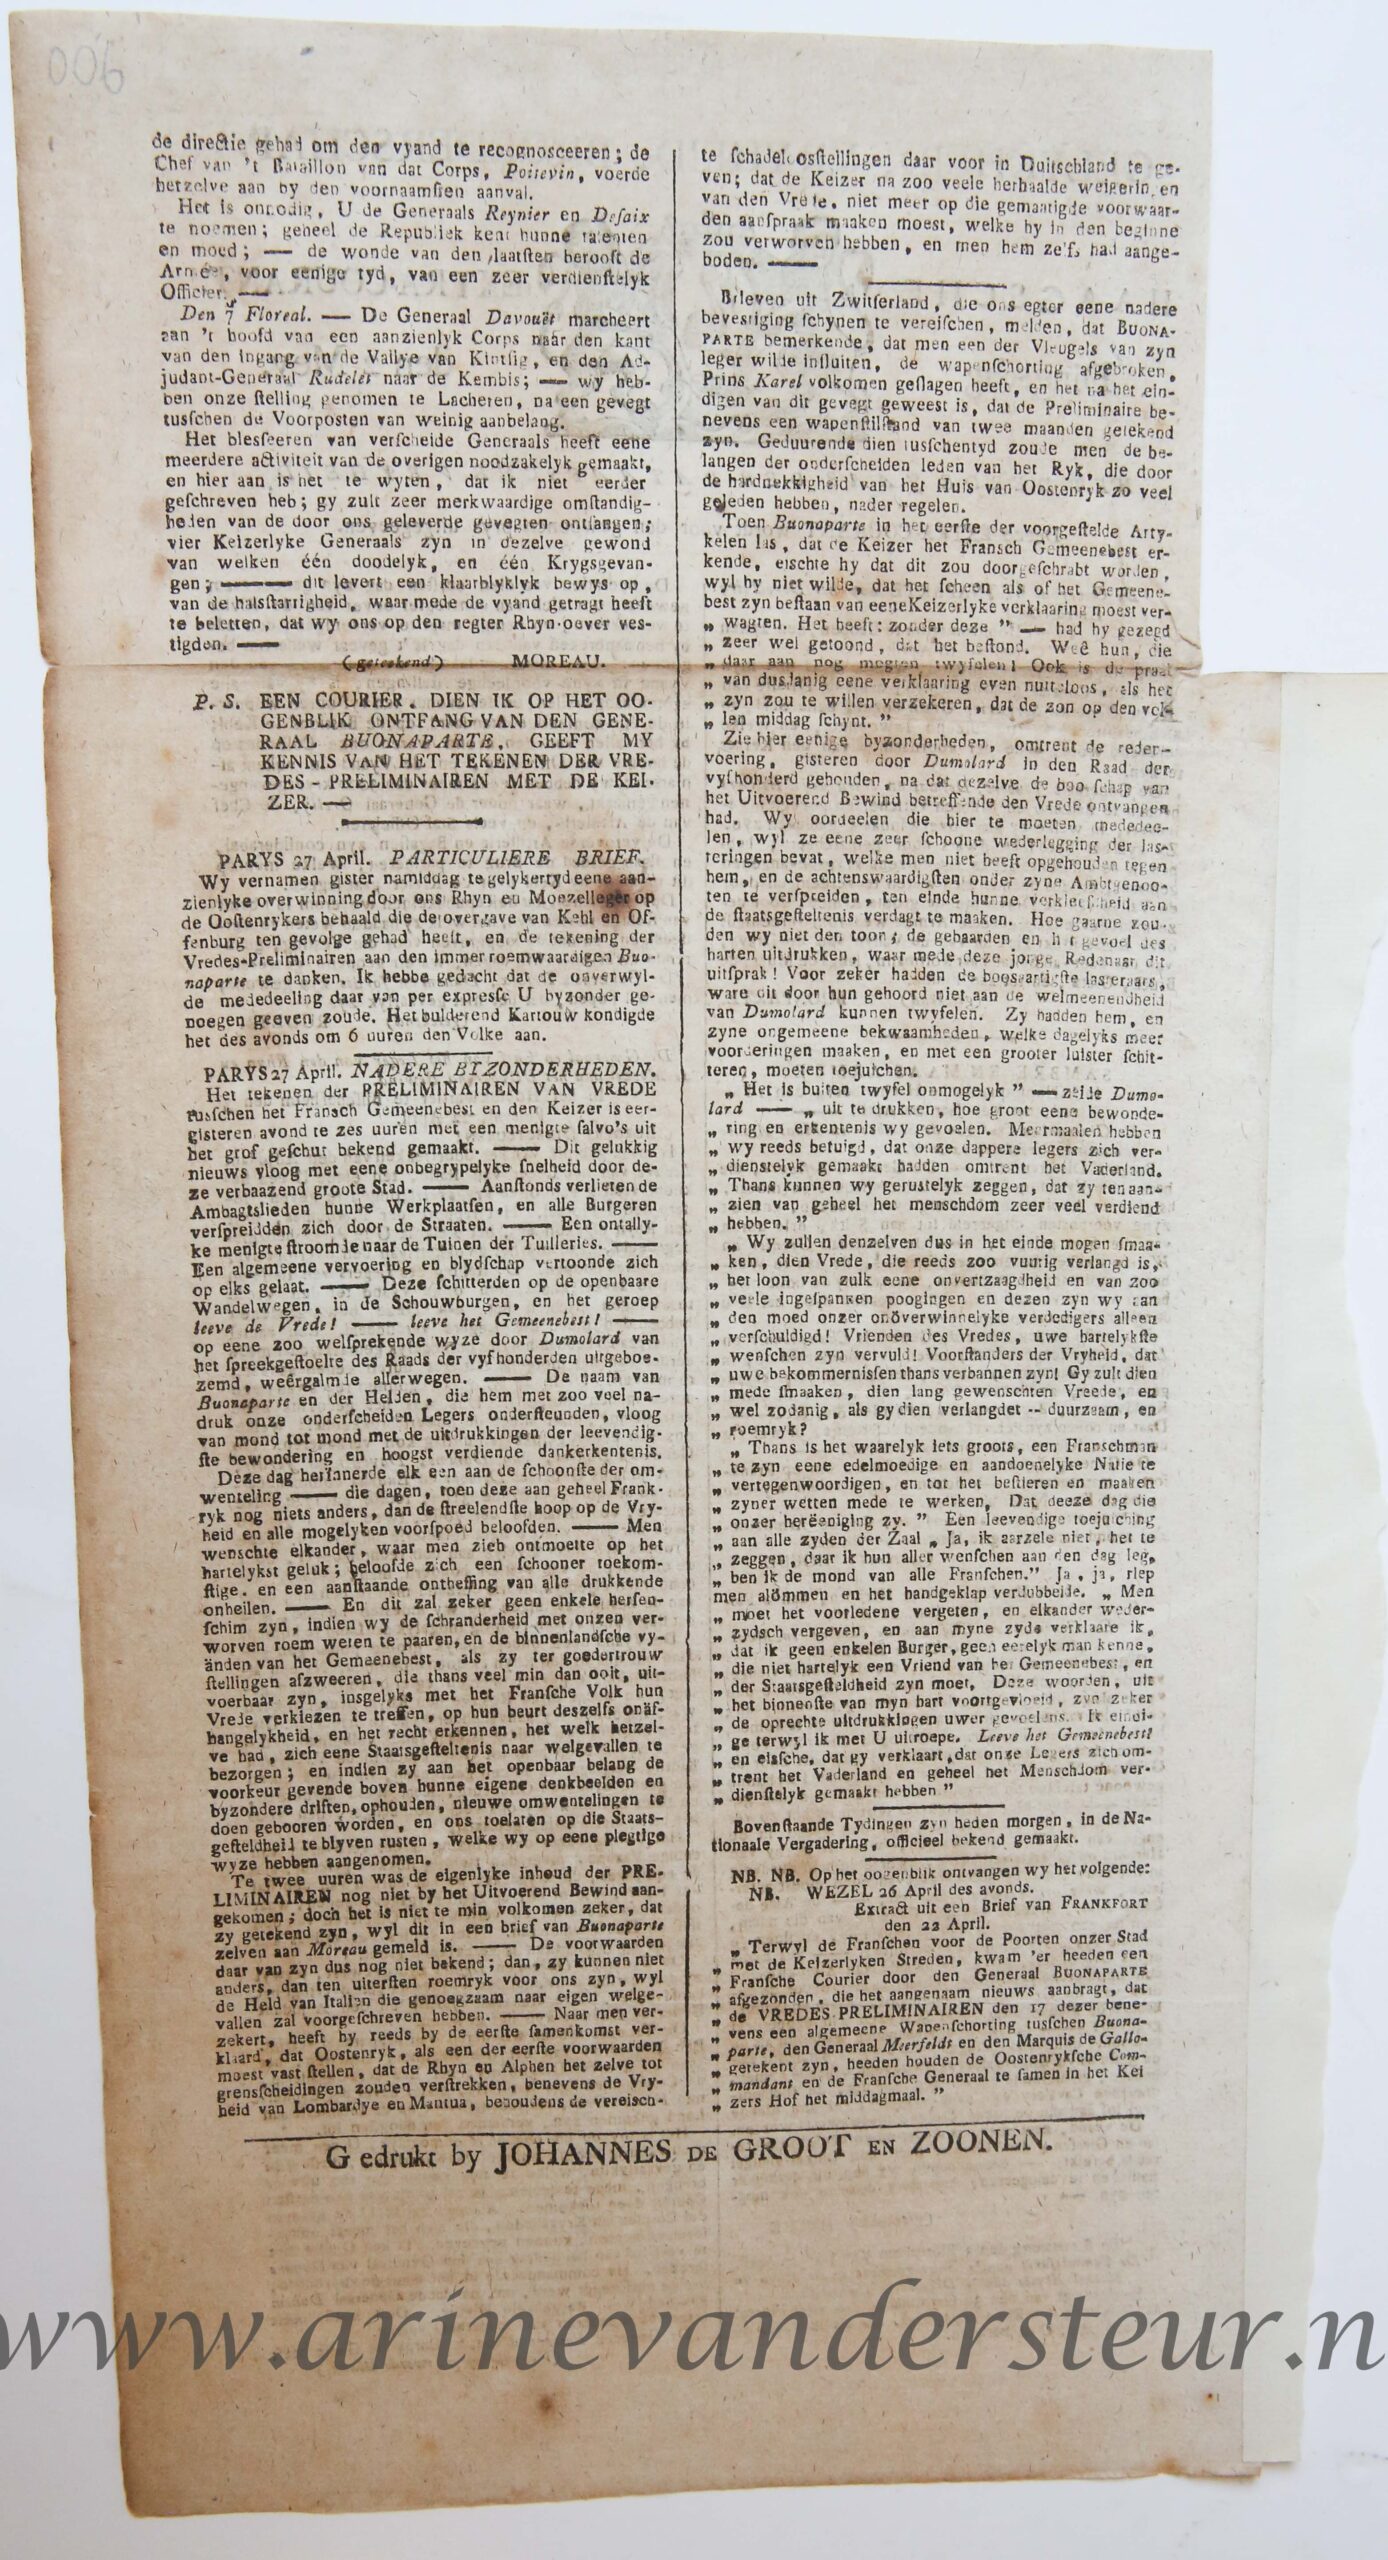 [Newspaper/Krant 1797?] Gelykheid, Vryheid, Broederschap. Haagsche Extra-Courant. Dingsdag den 2 Mey Het Derde Jaar der Bataafsche Vryheid (1797?), 1 p.